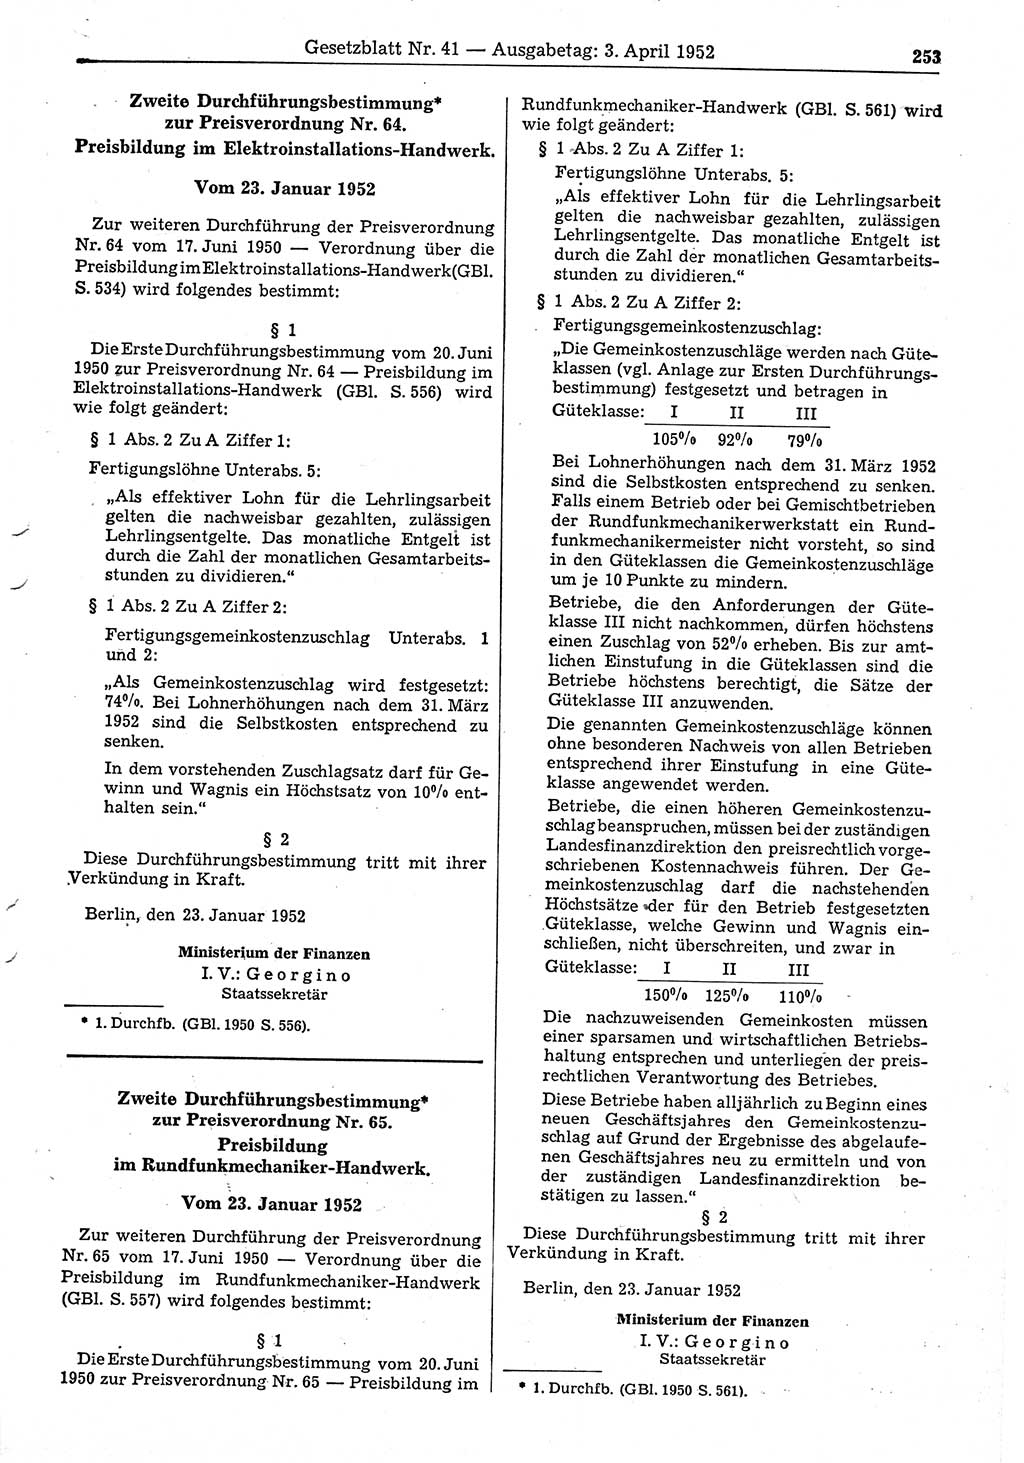 Gesetzblatt (GBl.) der Deutschen Demokratischen Republik (DDR) 1952, Seite 253 (GBl. DDR 1952, S. 253)